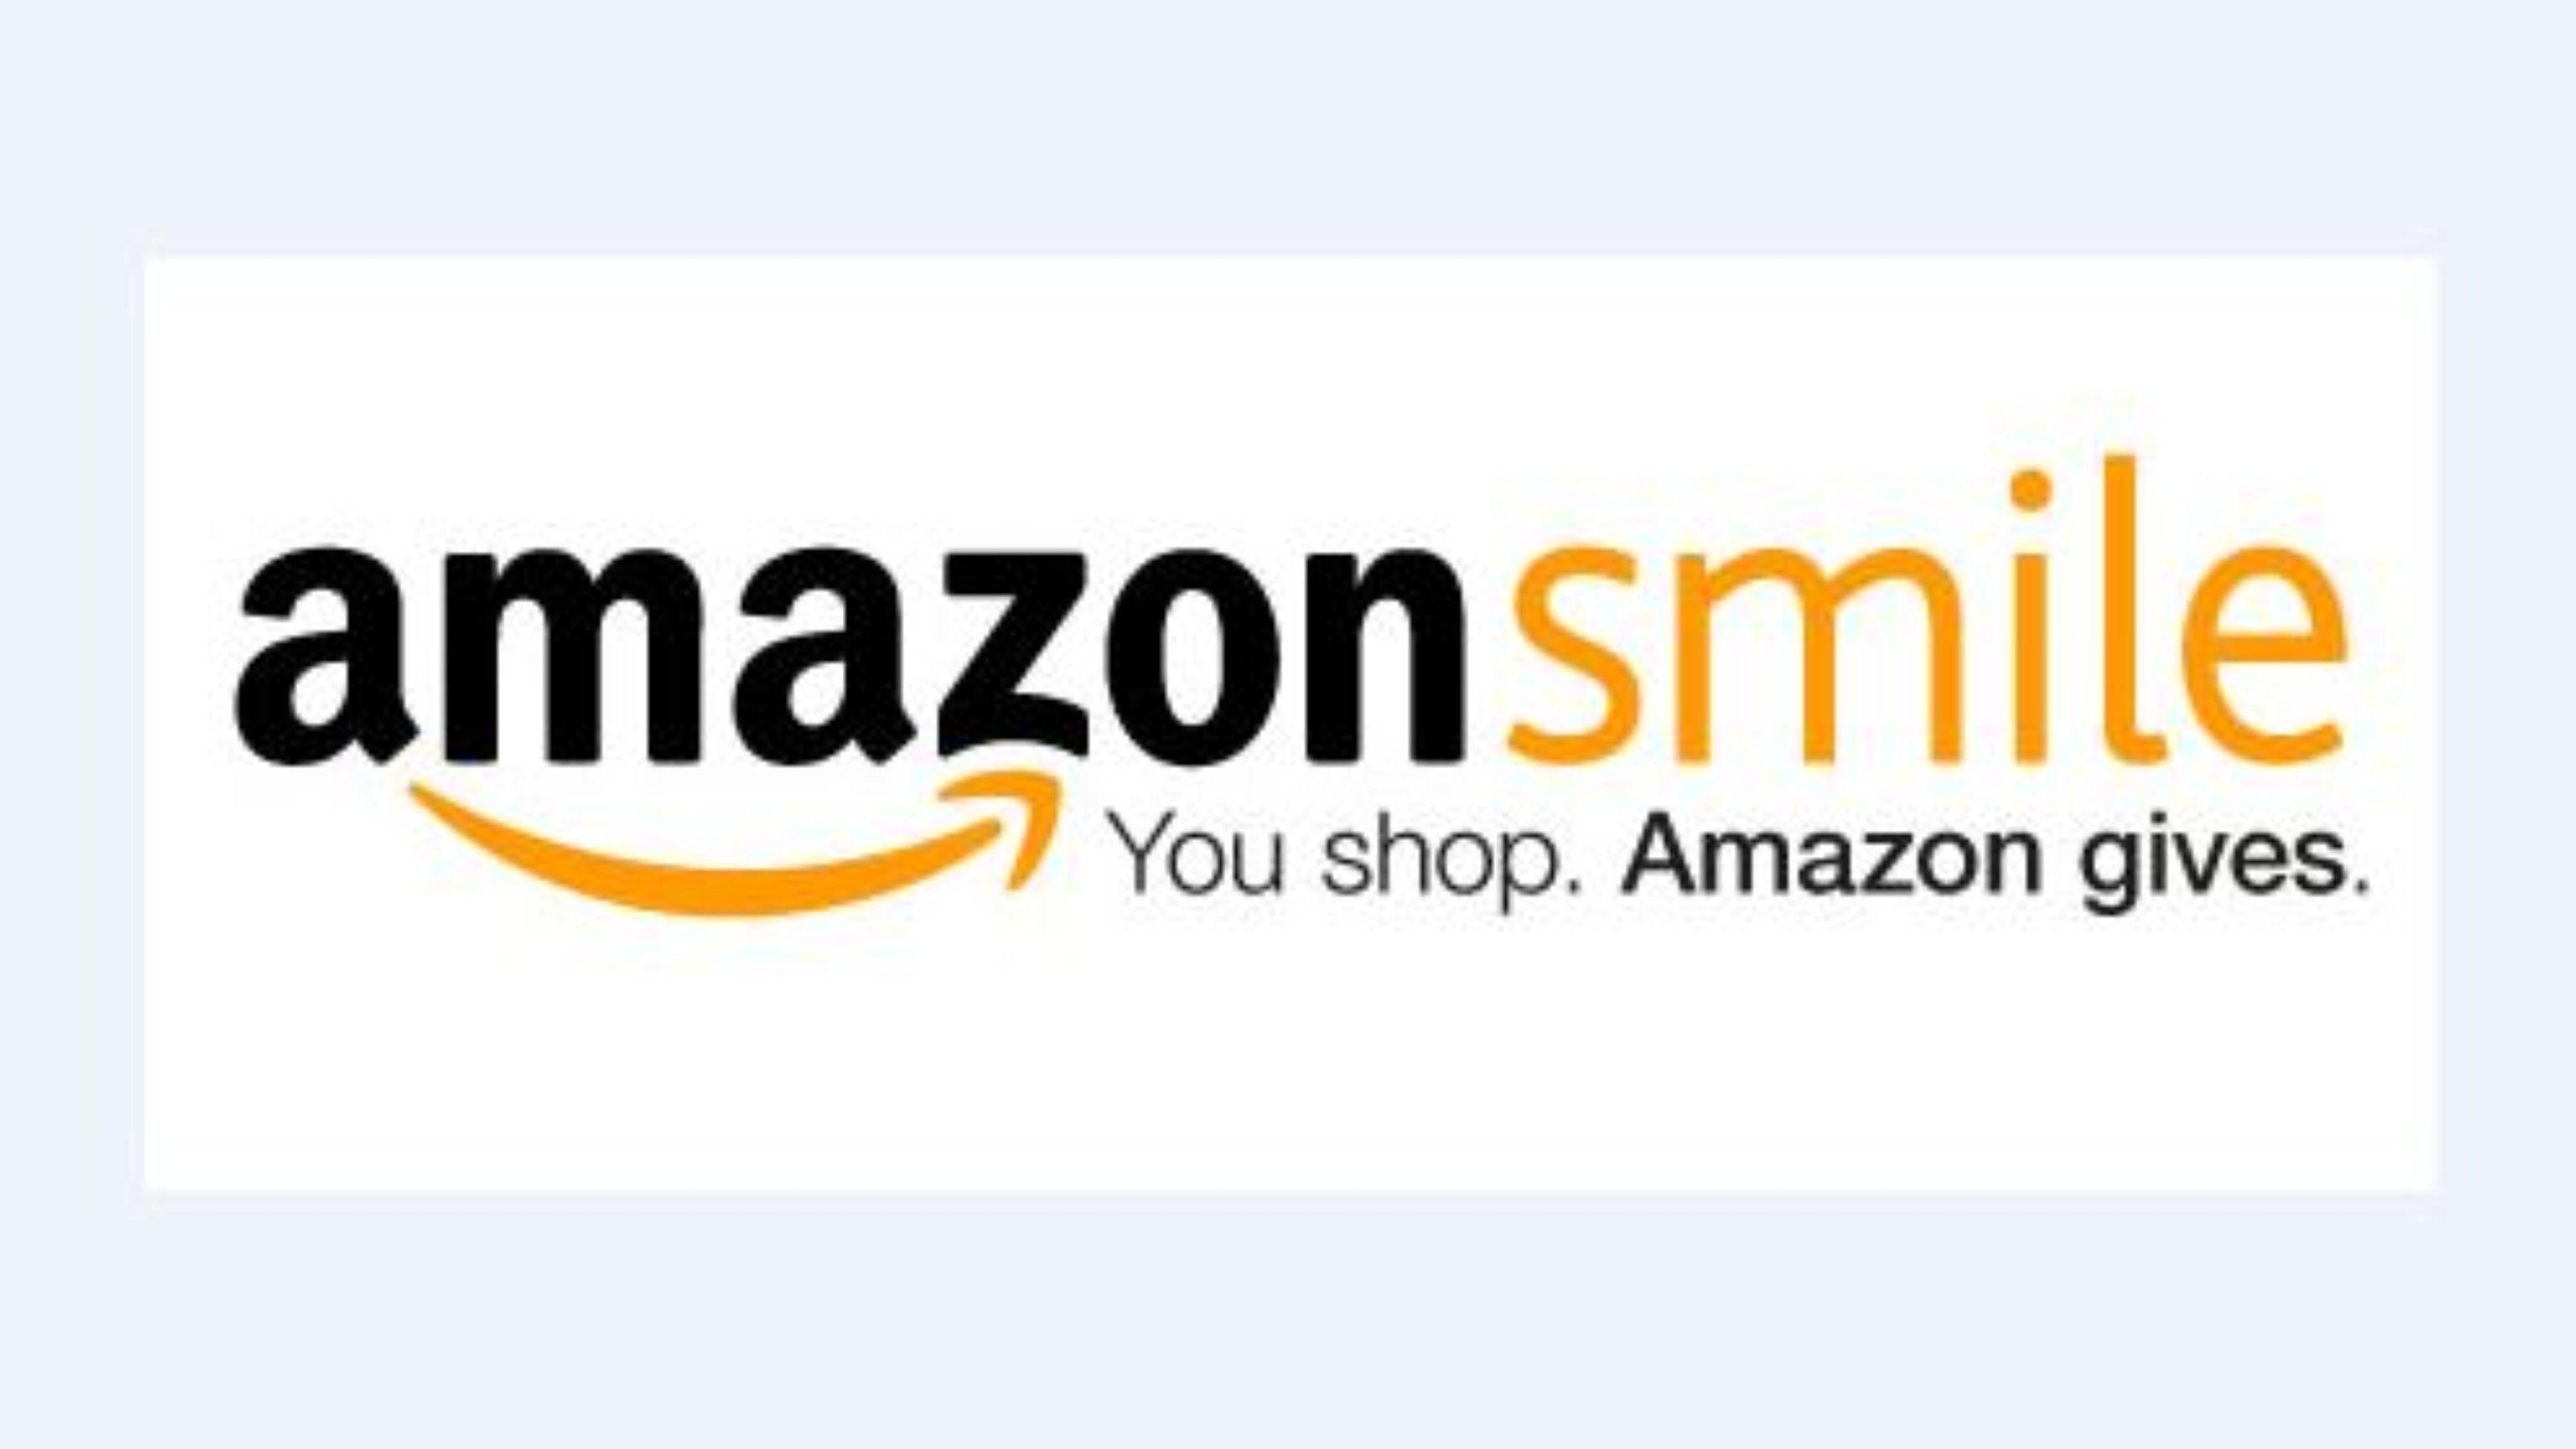 Amazon Smile Foundation Logo - Amazon Smile's for Flora Public Library